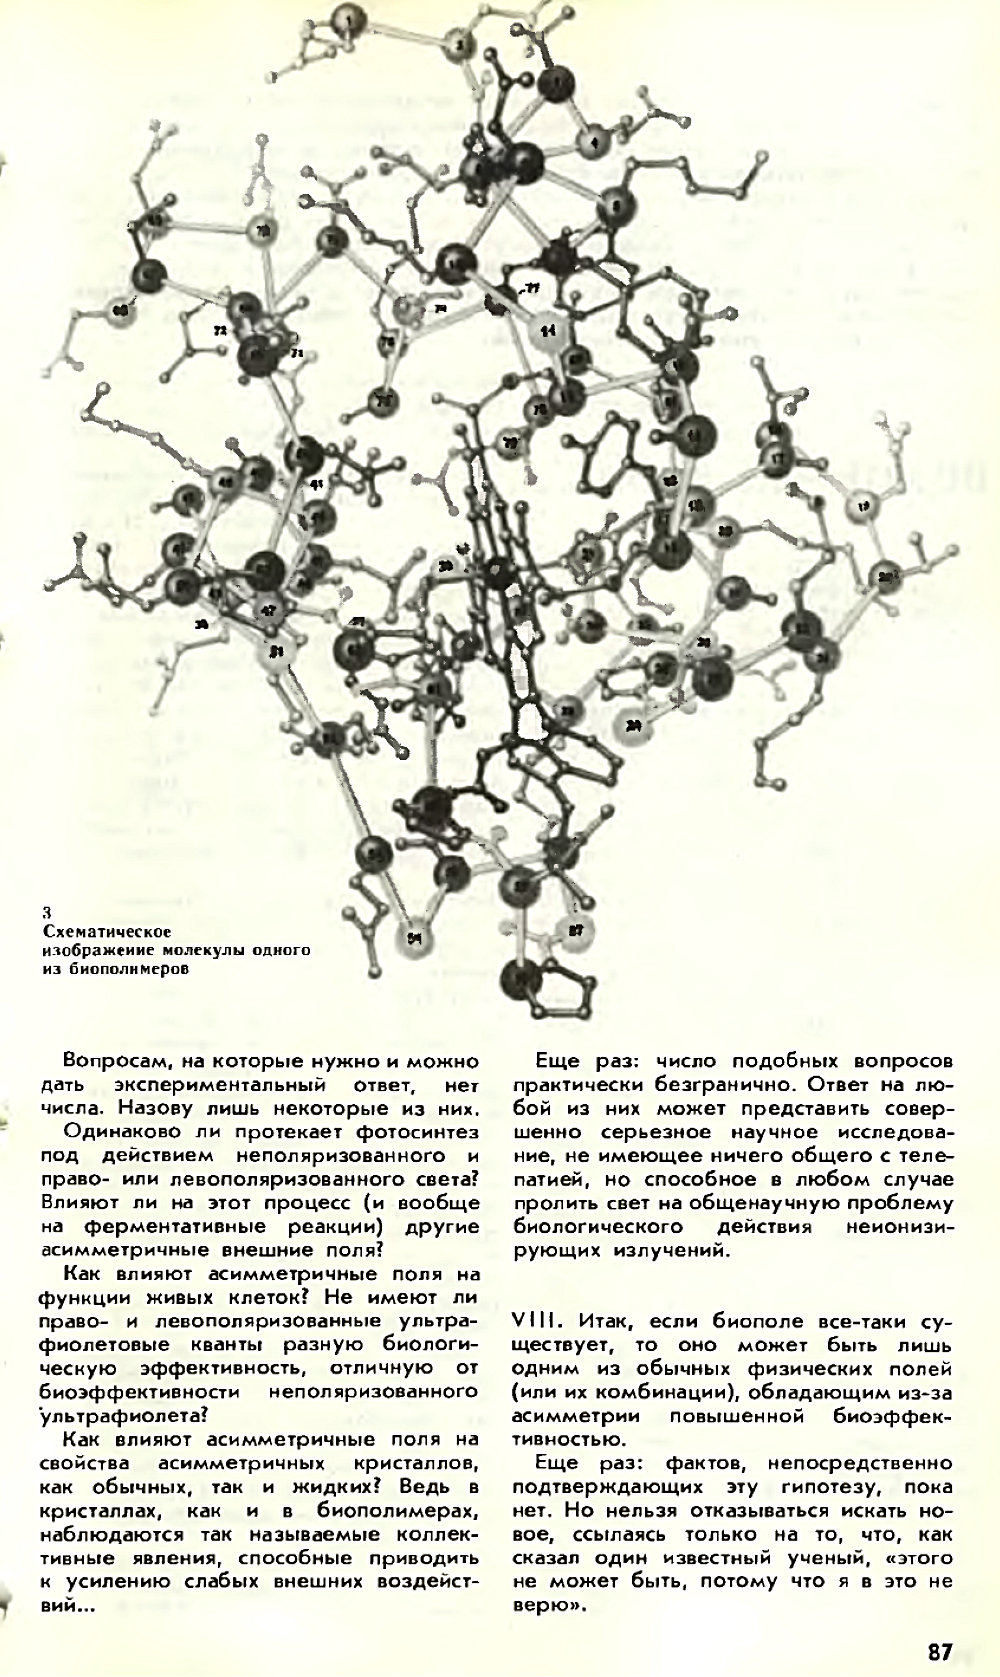 Асимметрия против хаоса, или что такое биополе. В. Жвирблис. Химия и жизнь, 1980, №12, с.81-87. Фотокопия №7